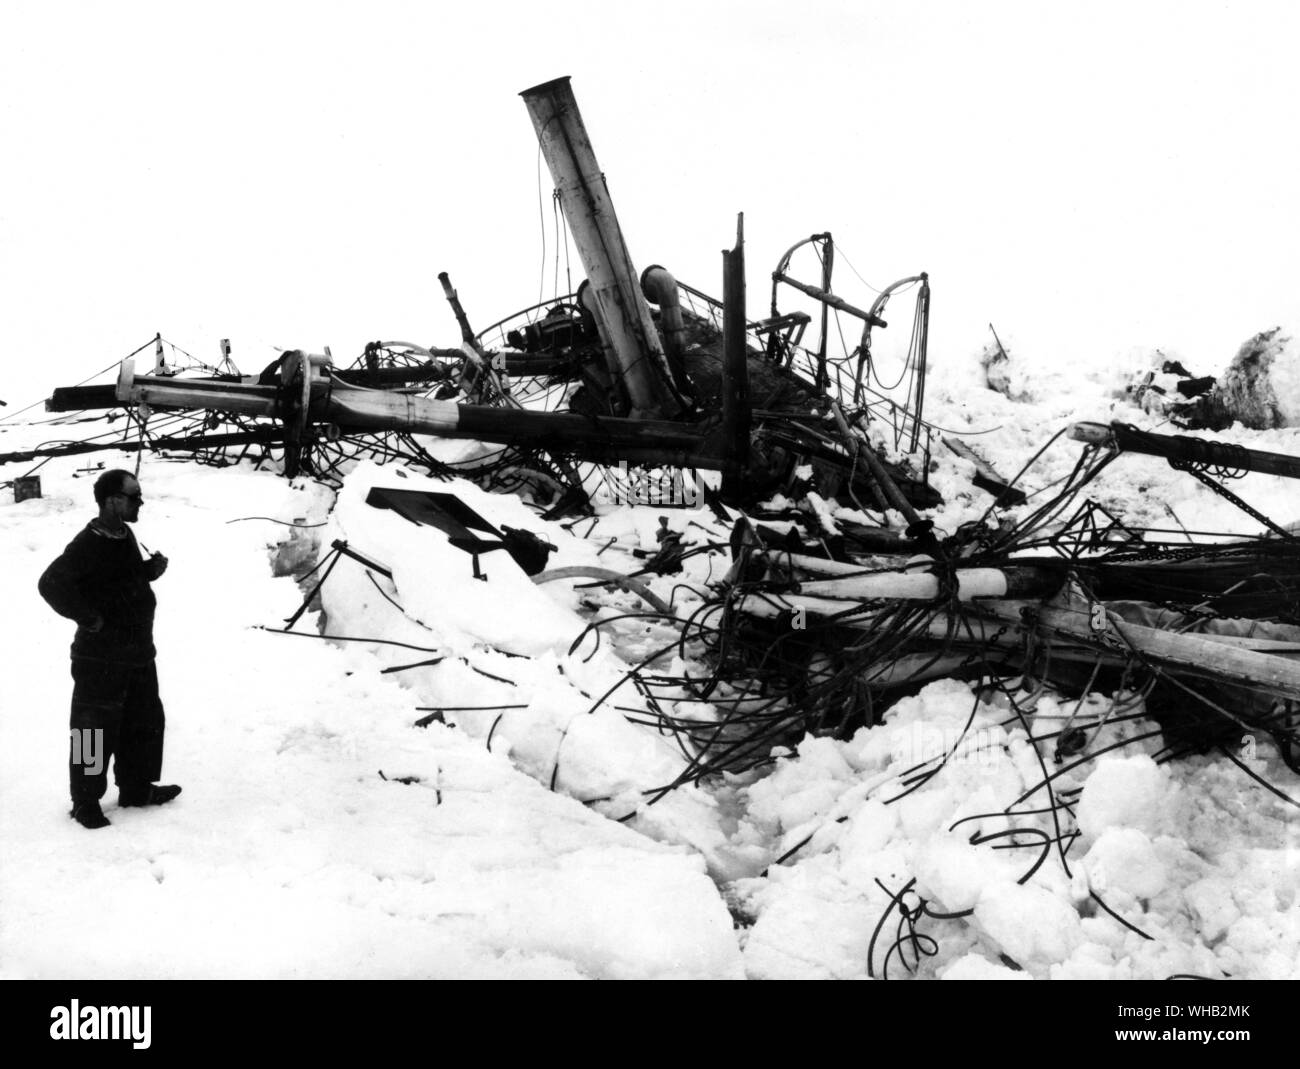 Frank Wild examinant les débris d'endurance sur l'expédition de Shackleton, 1914-1916 Banque D'Images